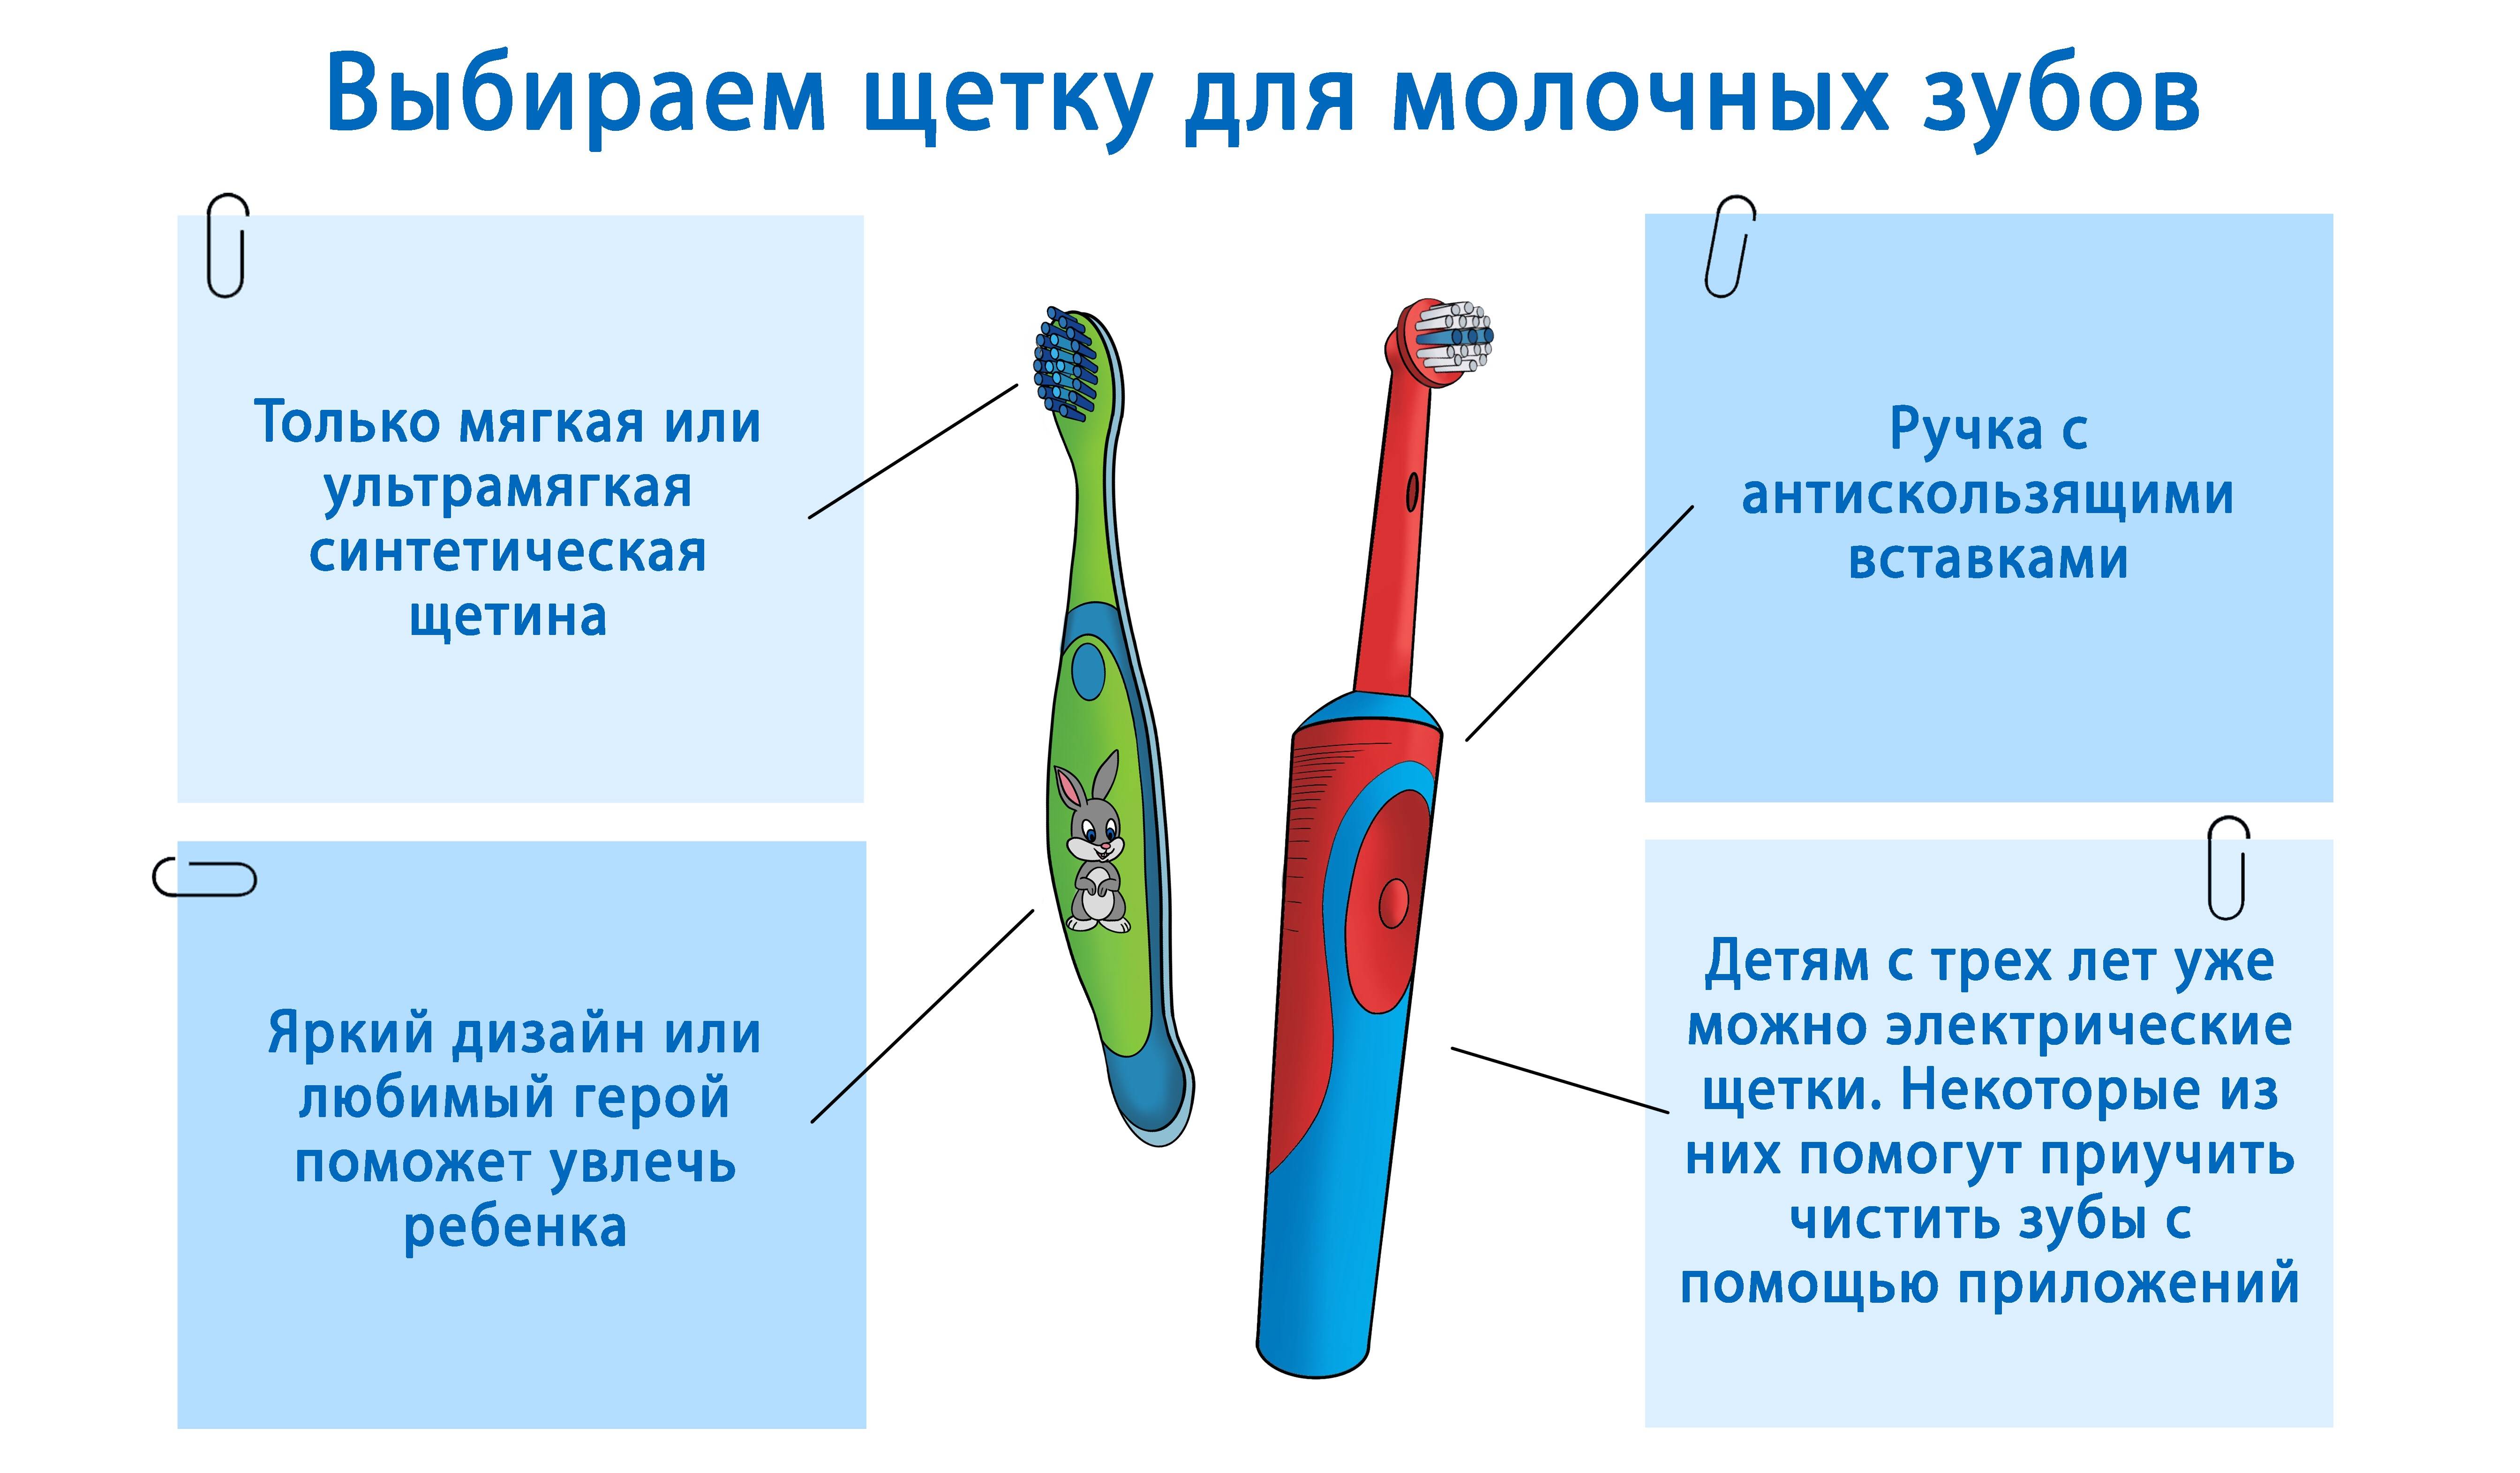 Электрическая зубная щетка для детей от 3-7 лет на батарейках: обзор лучших